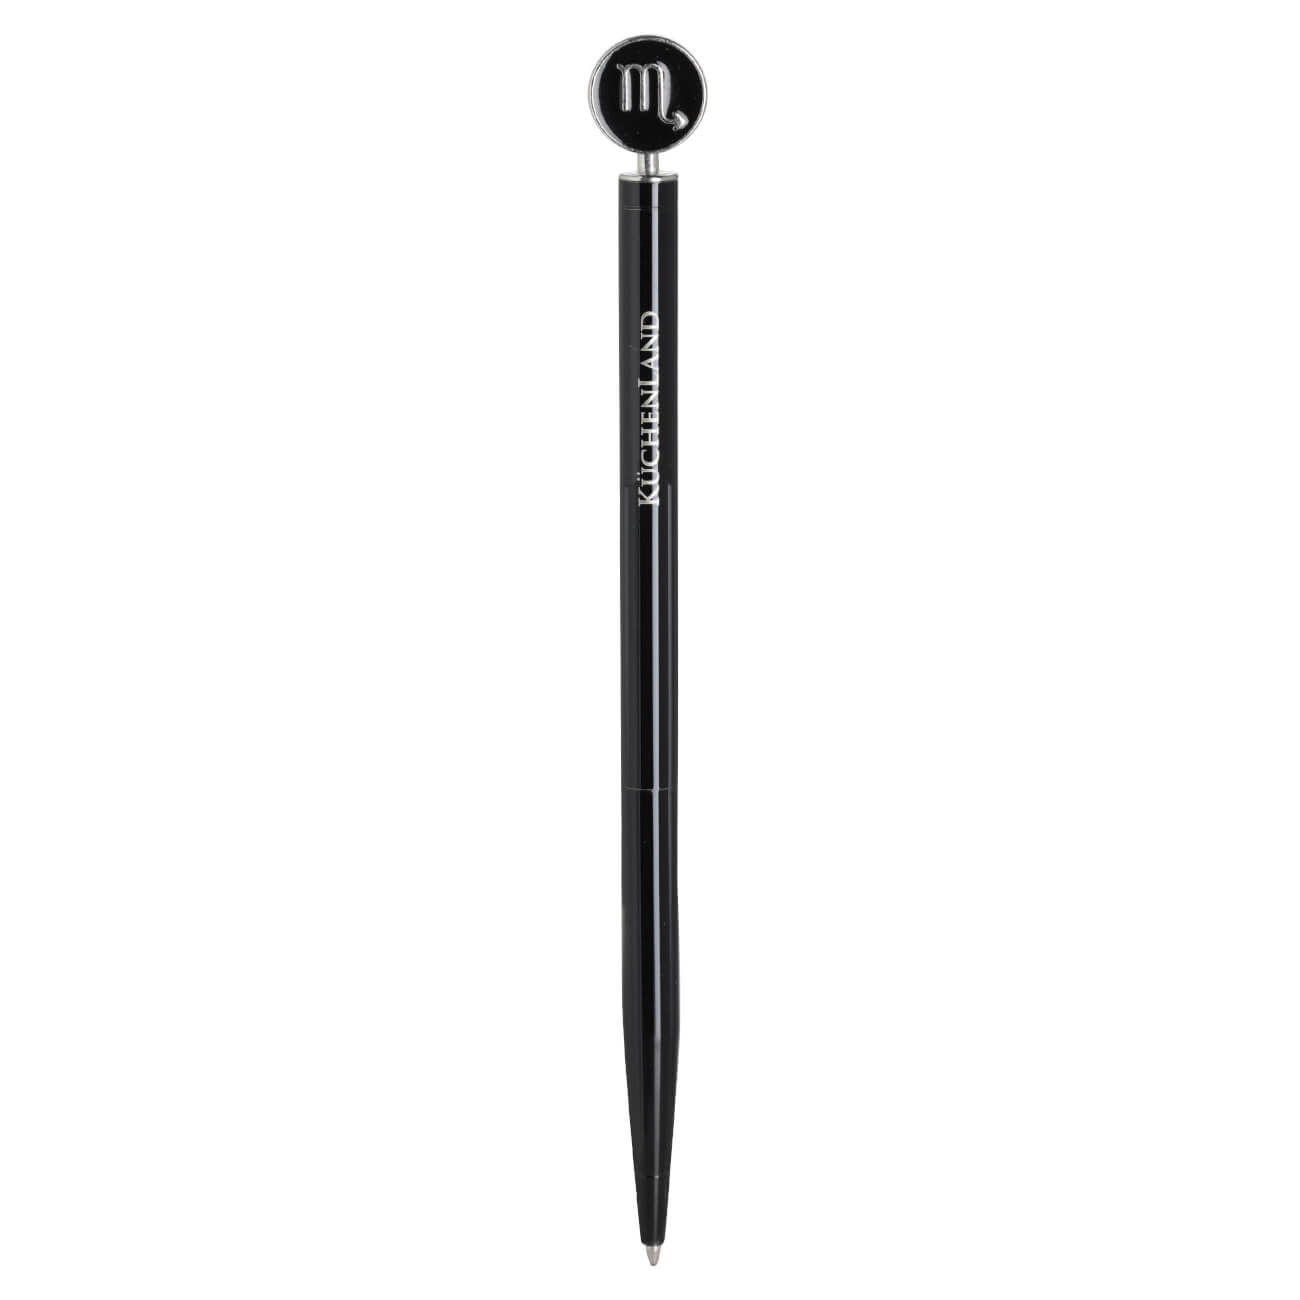 Ручка шариковая, 15 см, с фигуркой, сталь, черно-серебристая, Скорпион, Zodiac изображение № 1